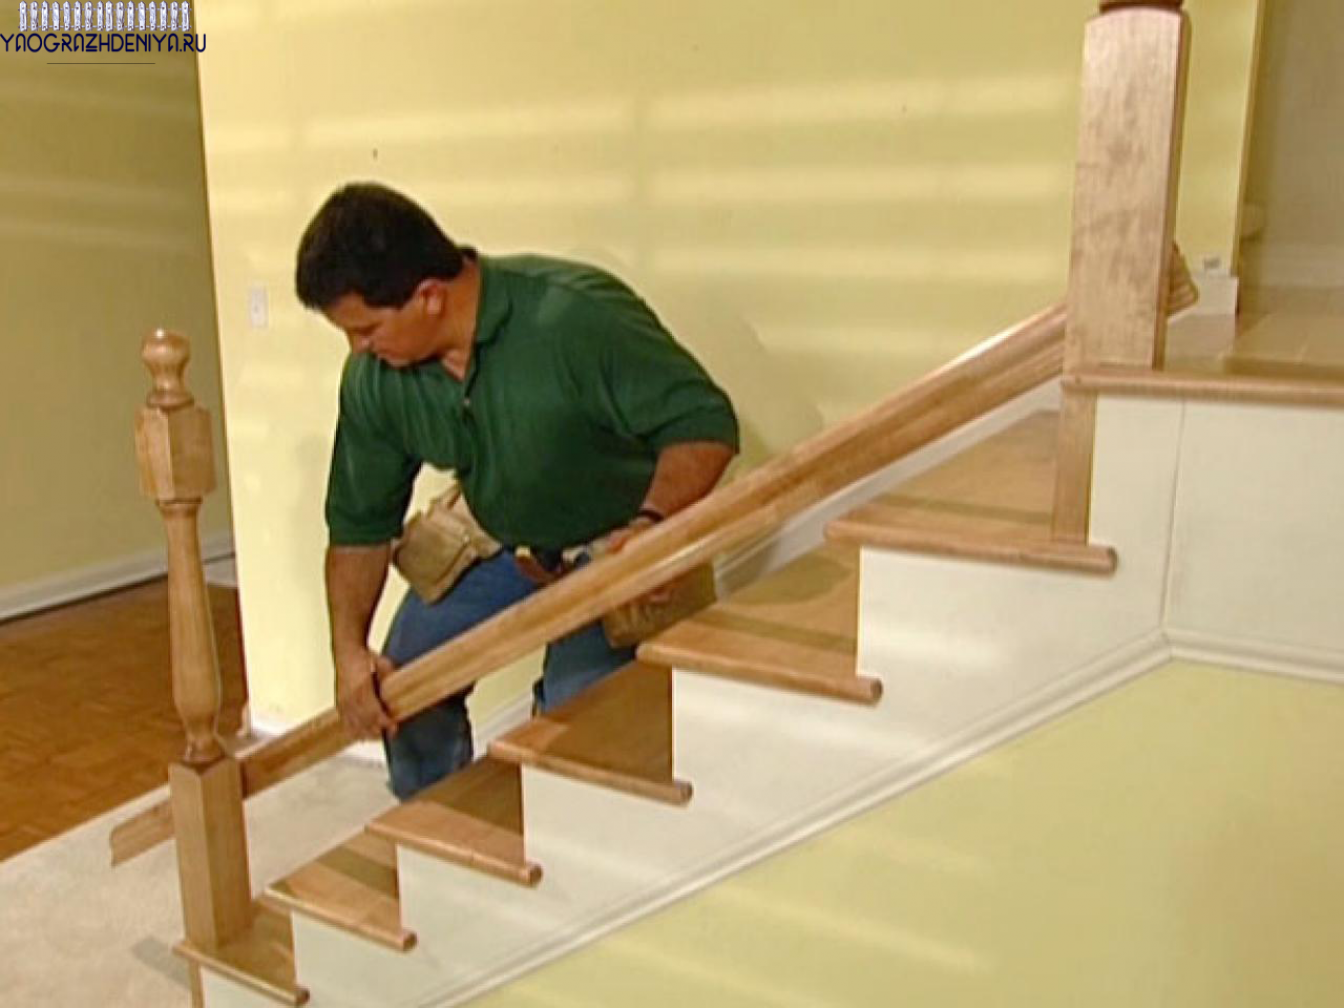 Краткая инструкция по монтажу перил из дерева на лестницу или террасу